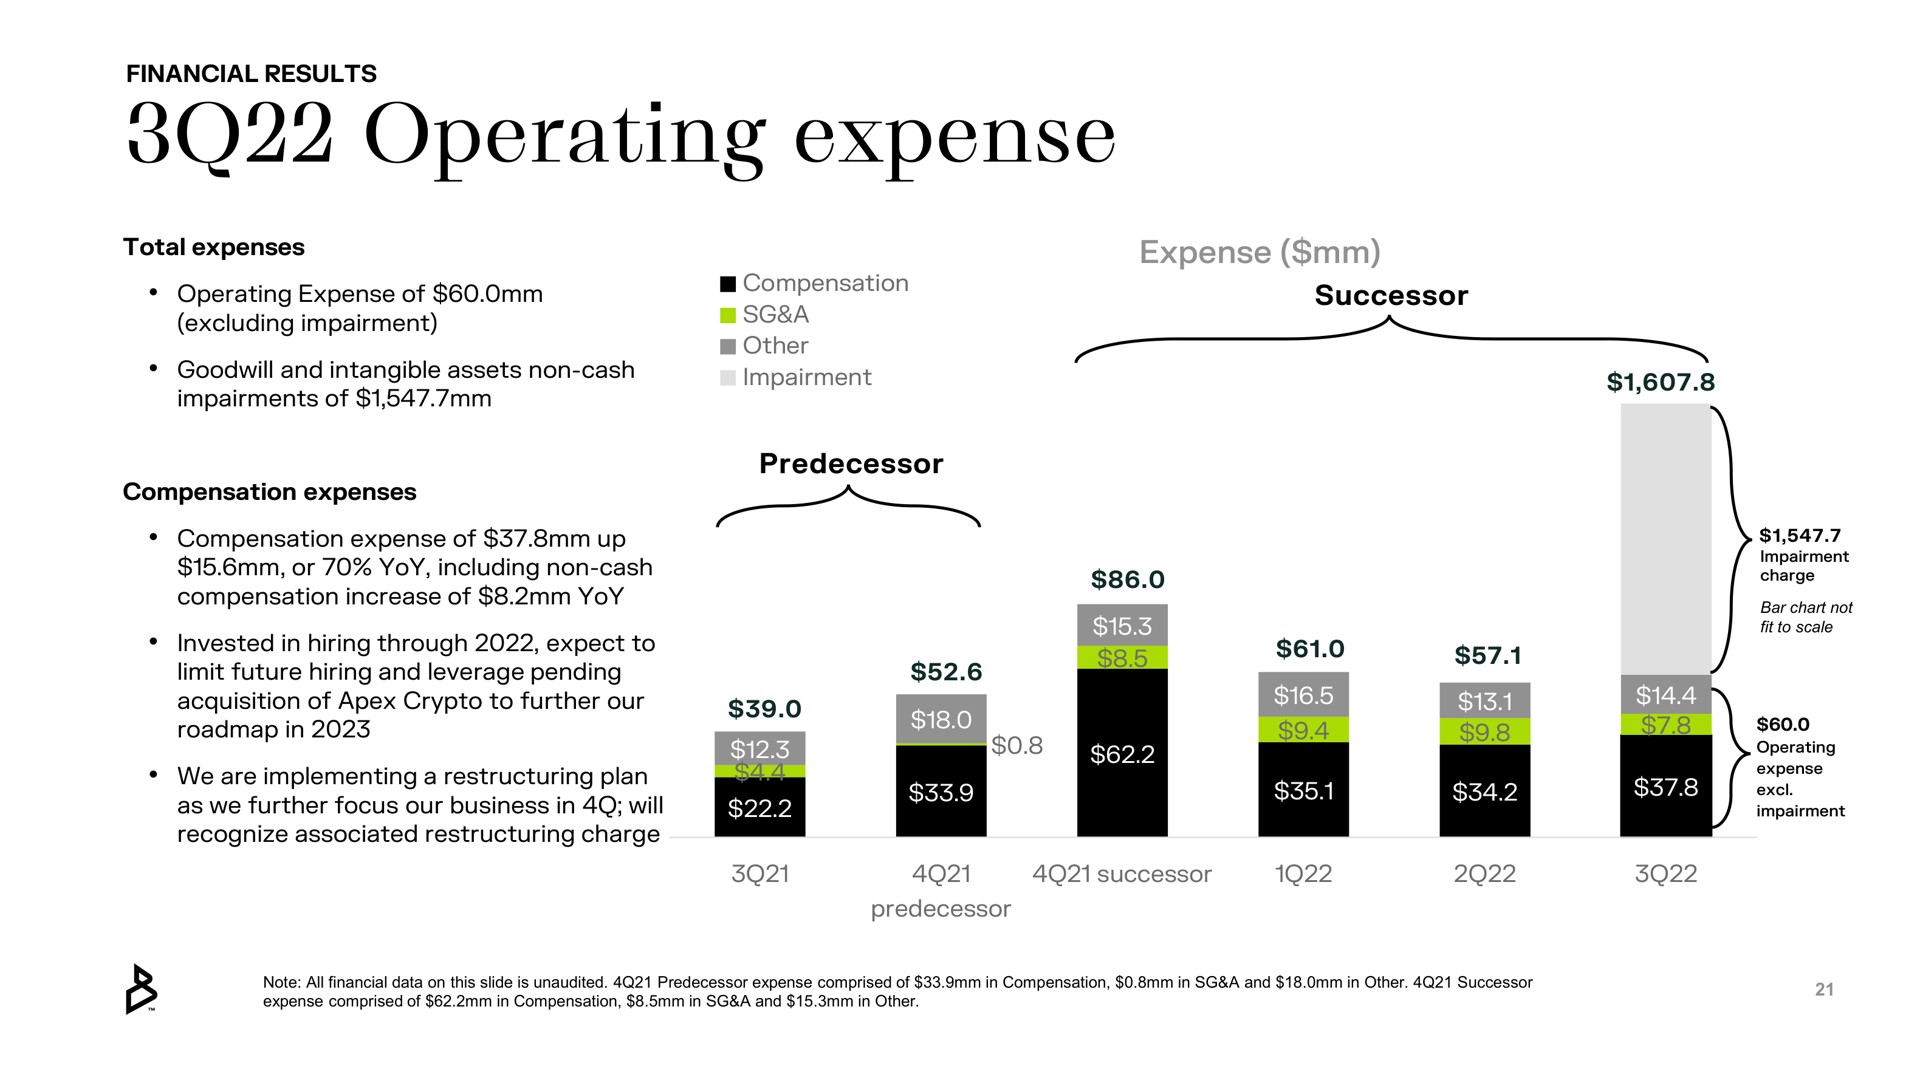 operating expense | Bakkt